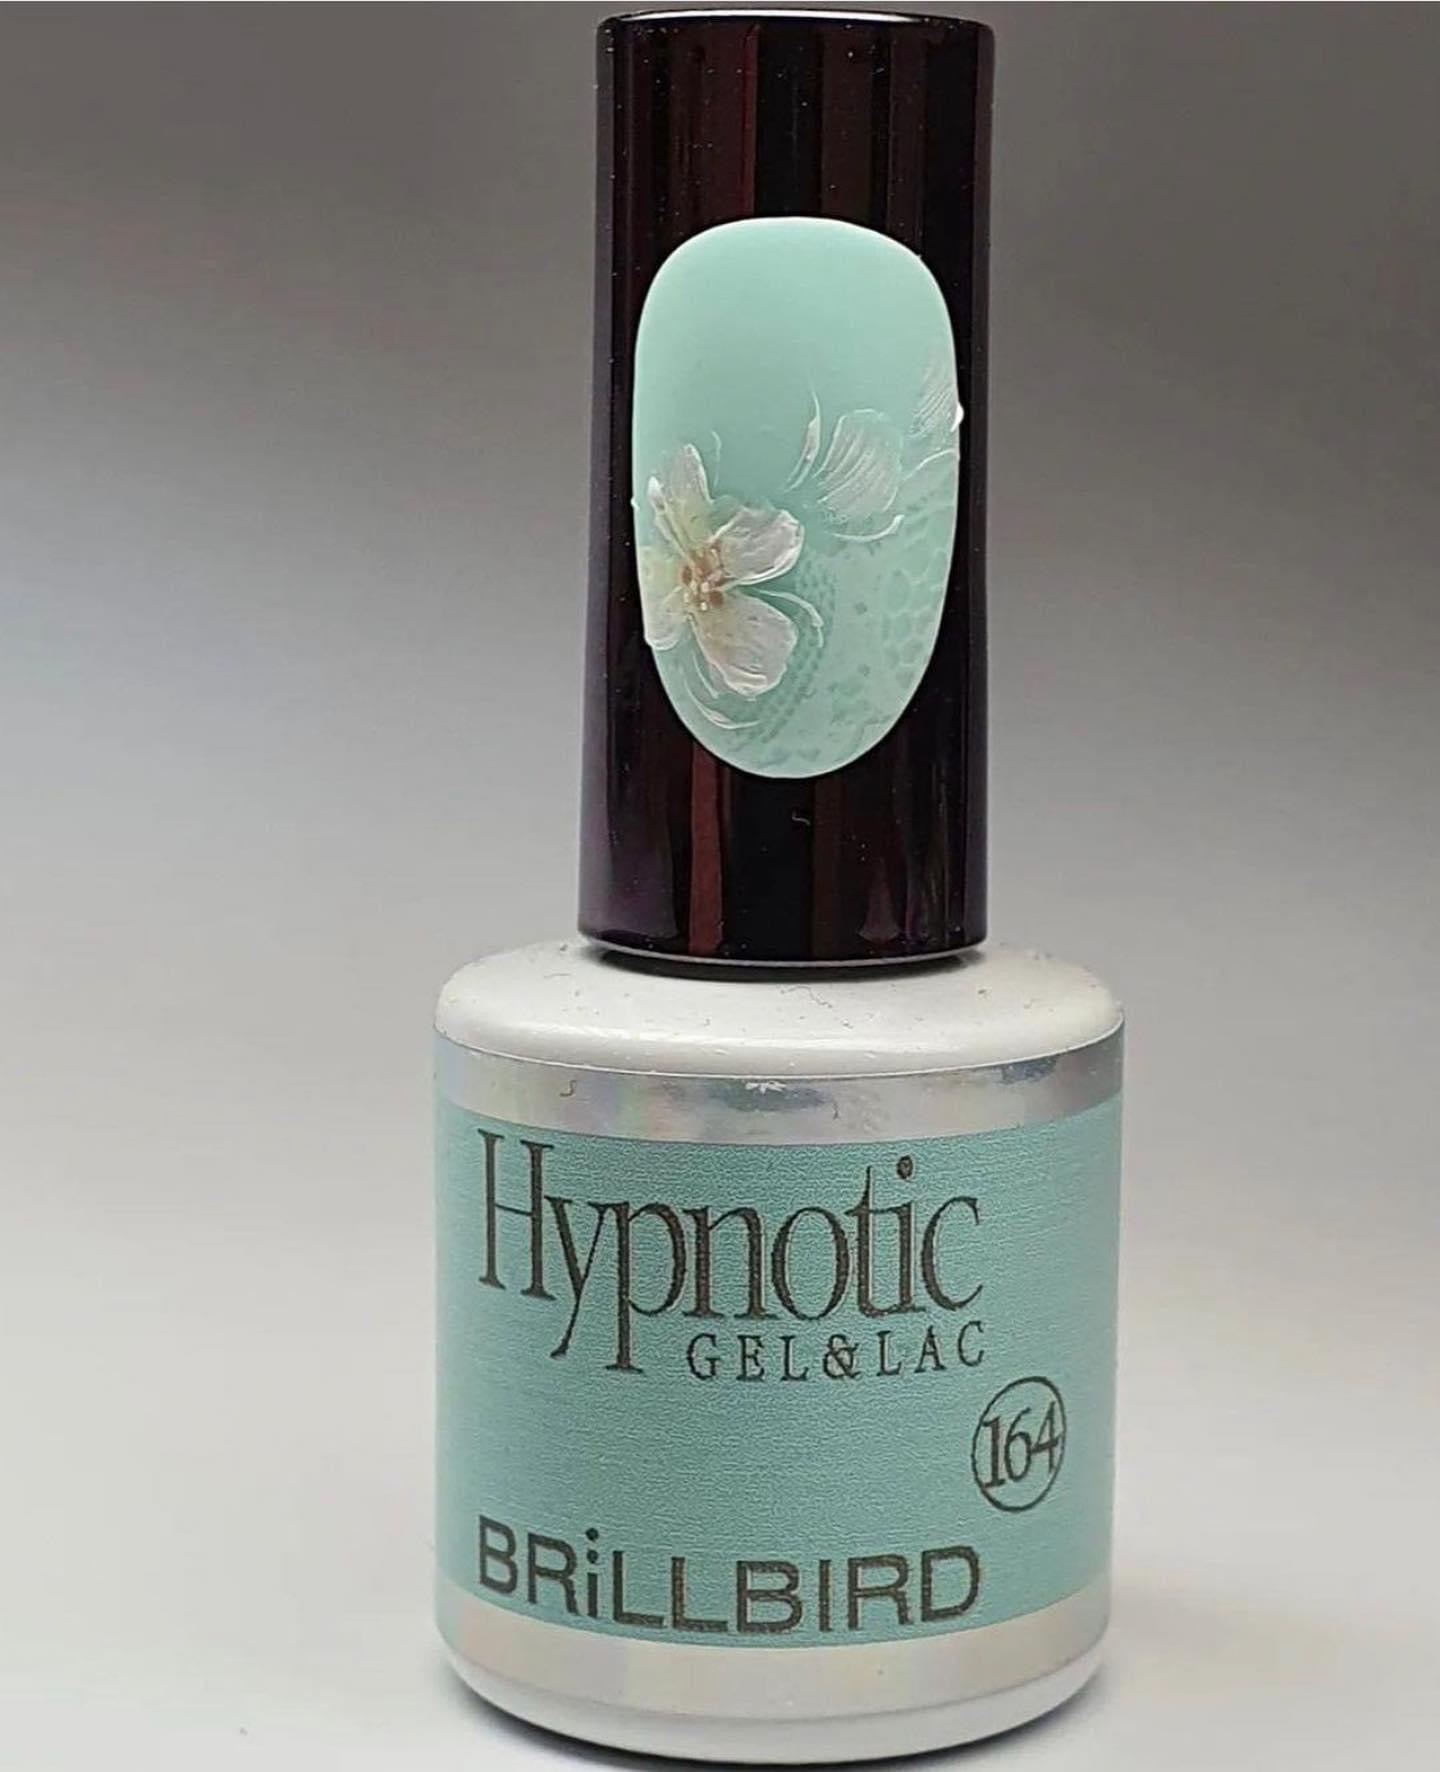 Hypnotic gel & lac - 164